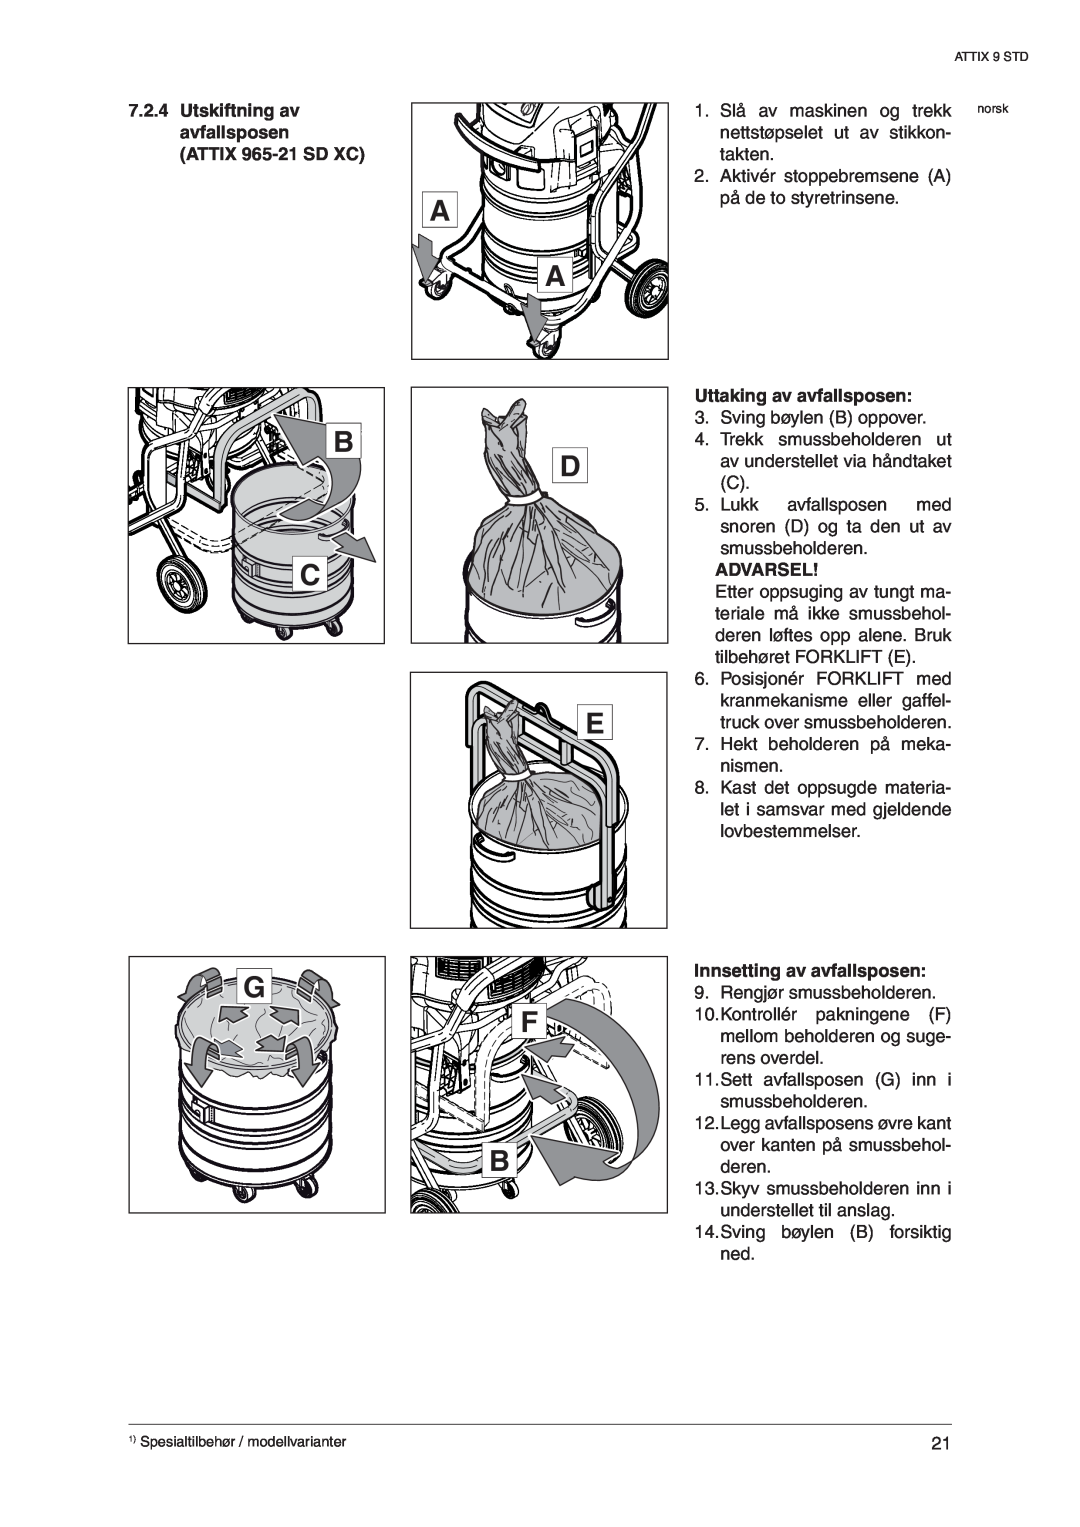 Nilfisk-ALTO 965-21 SD XC, 963-21 ED XC manual Uttaking av avfallsposen, Innsetting av avfallsposen, Advarsel 